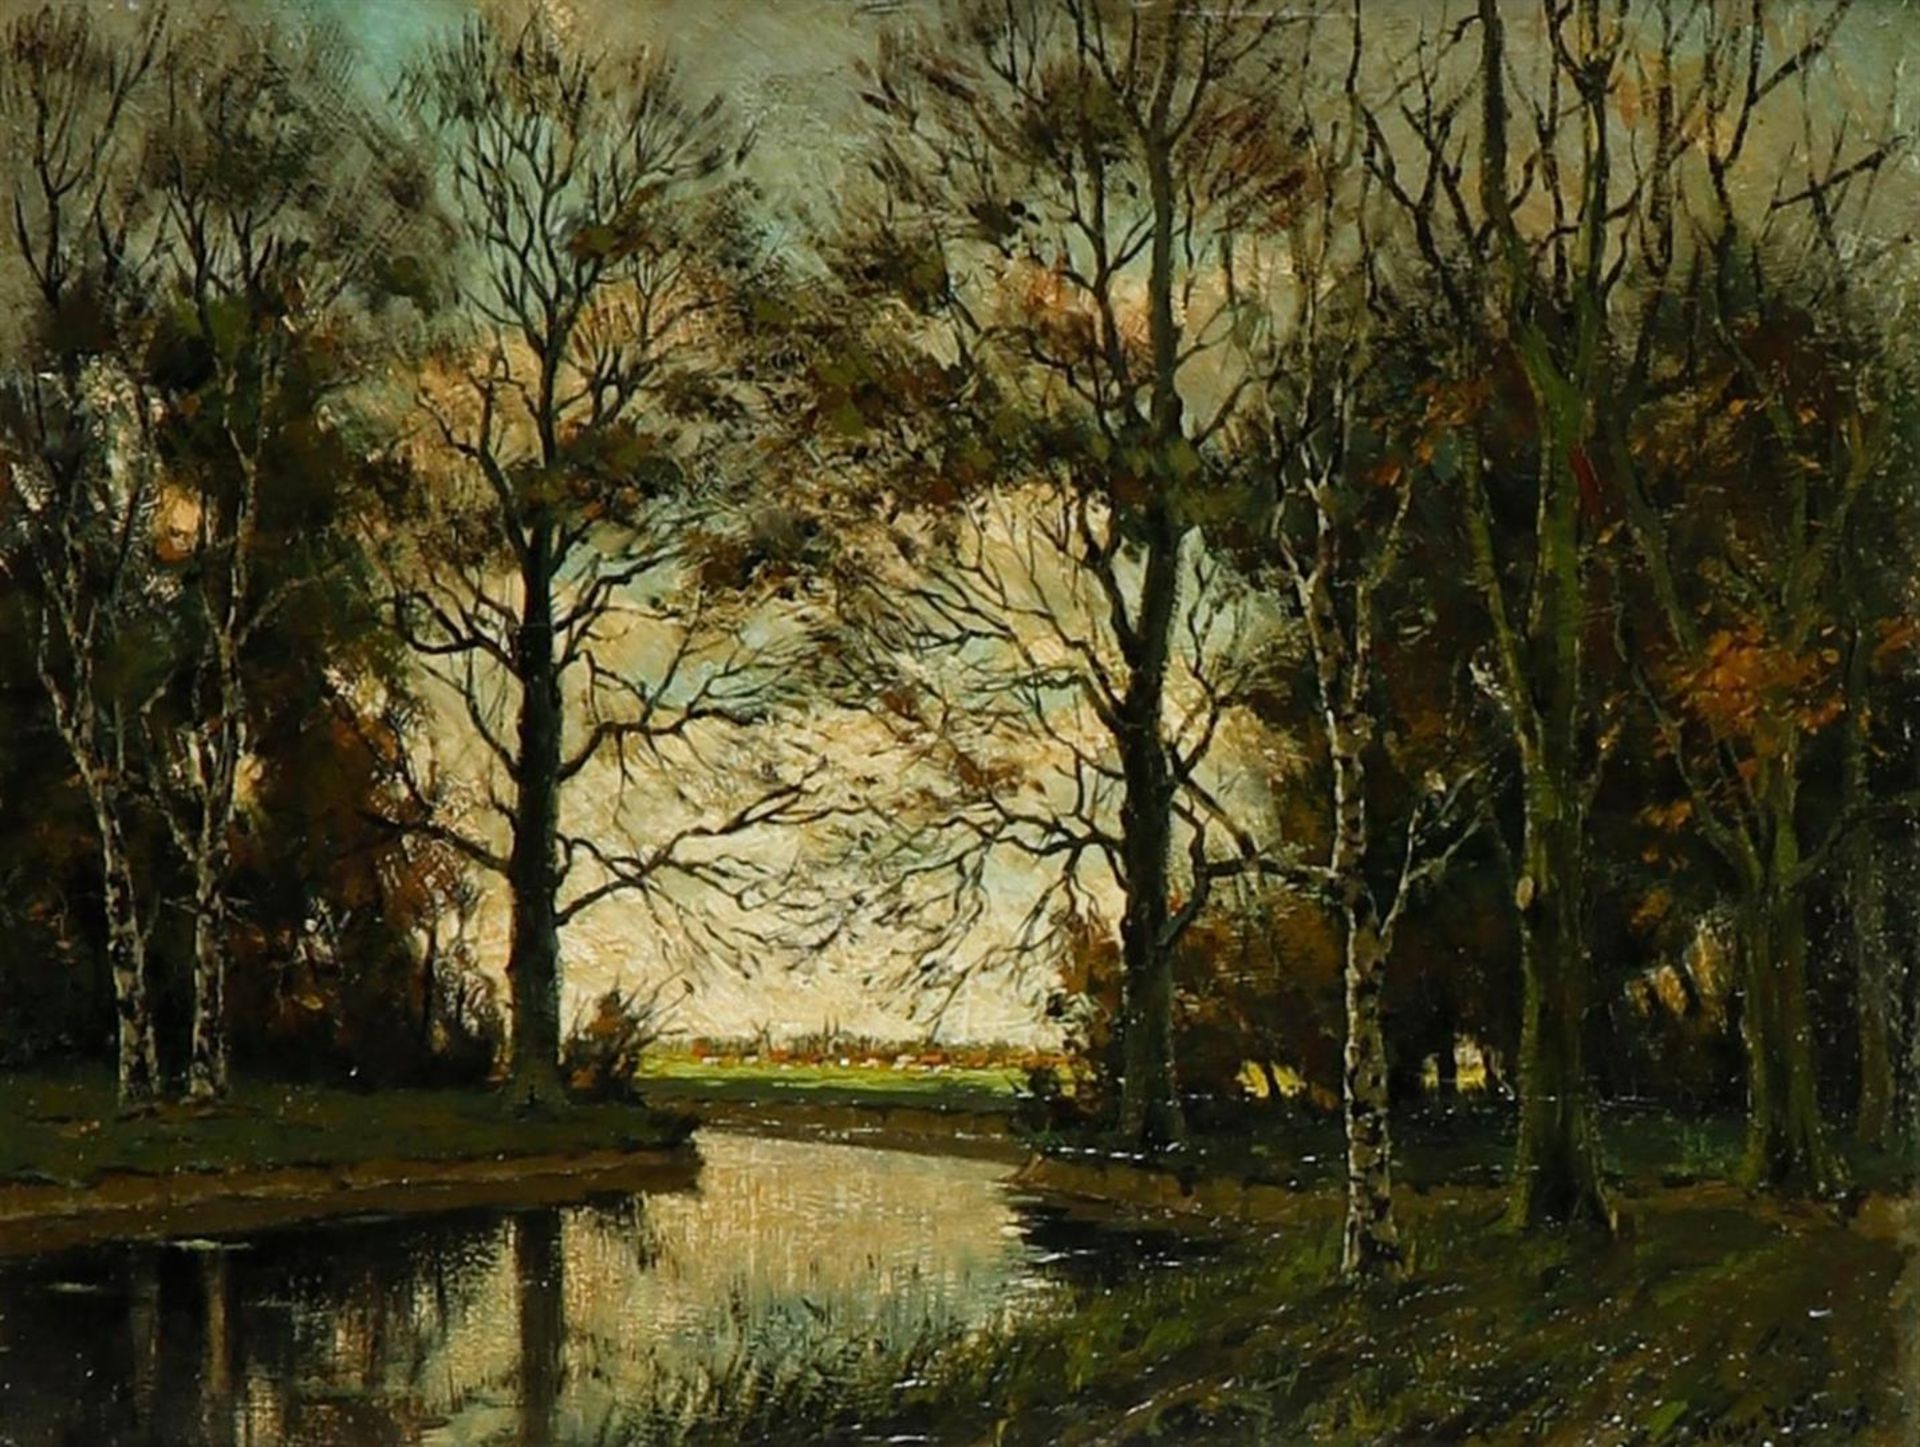 Timus de Jongh (Amsterdam 1885 - 1942 Bloemfontijn, South Africa), A forest view with a river, (poss